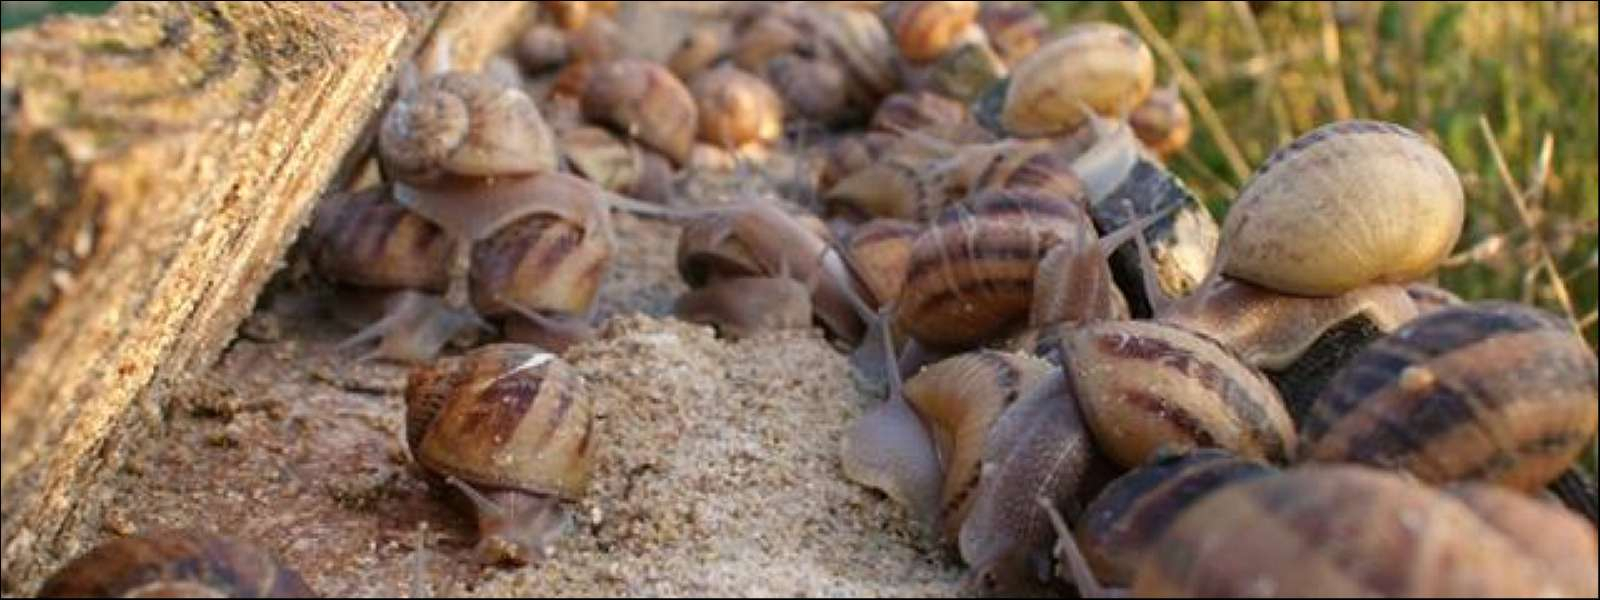 La Coquille Sivrotine : Élevage D'Escargots À Sivry-Sur-Meuse à Elevage Escargot